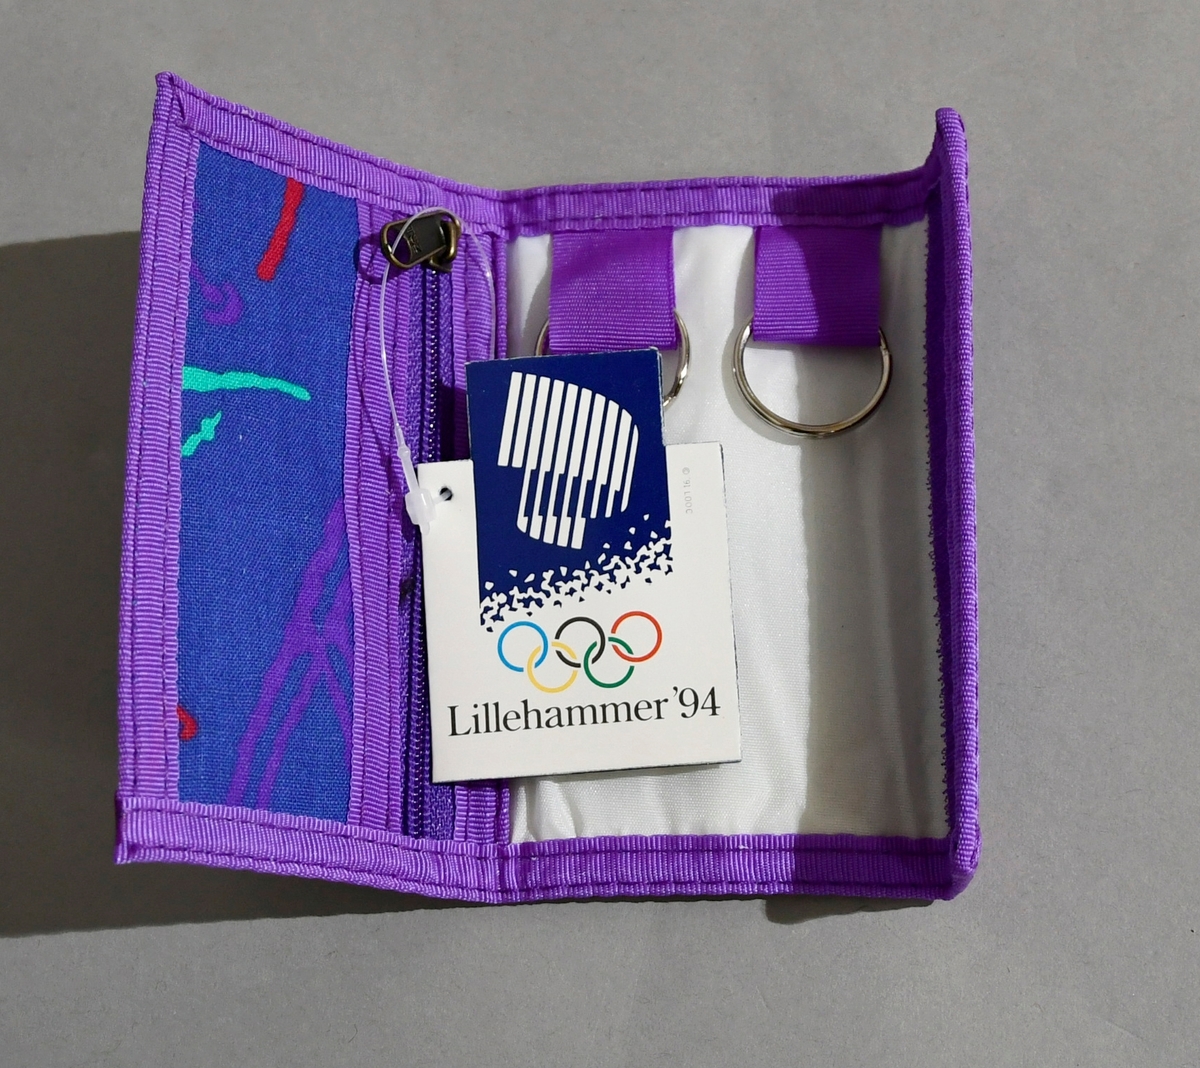 Blått nøkkelknippe med lilla kantbånd og piktogrammer i flere farger. Emblemet for Lillehammer '94 på baksiden.